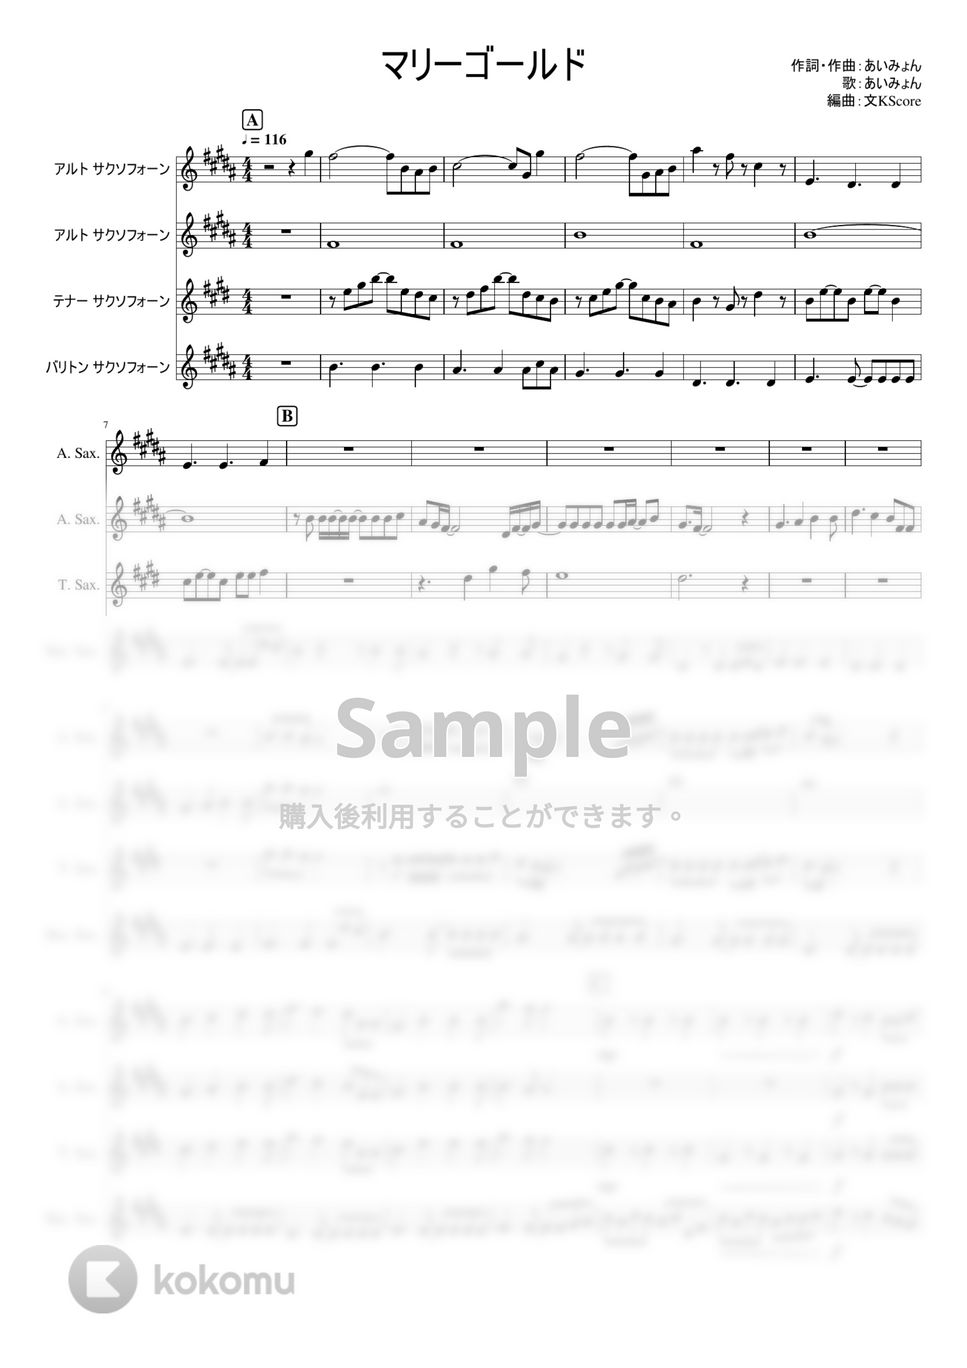 あいみょん - マリーゴールド (サックス四重奏AATB/中級) by ぶんぶんスコア